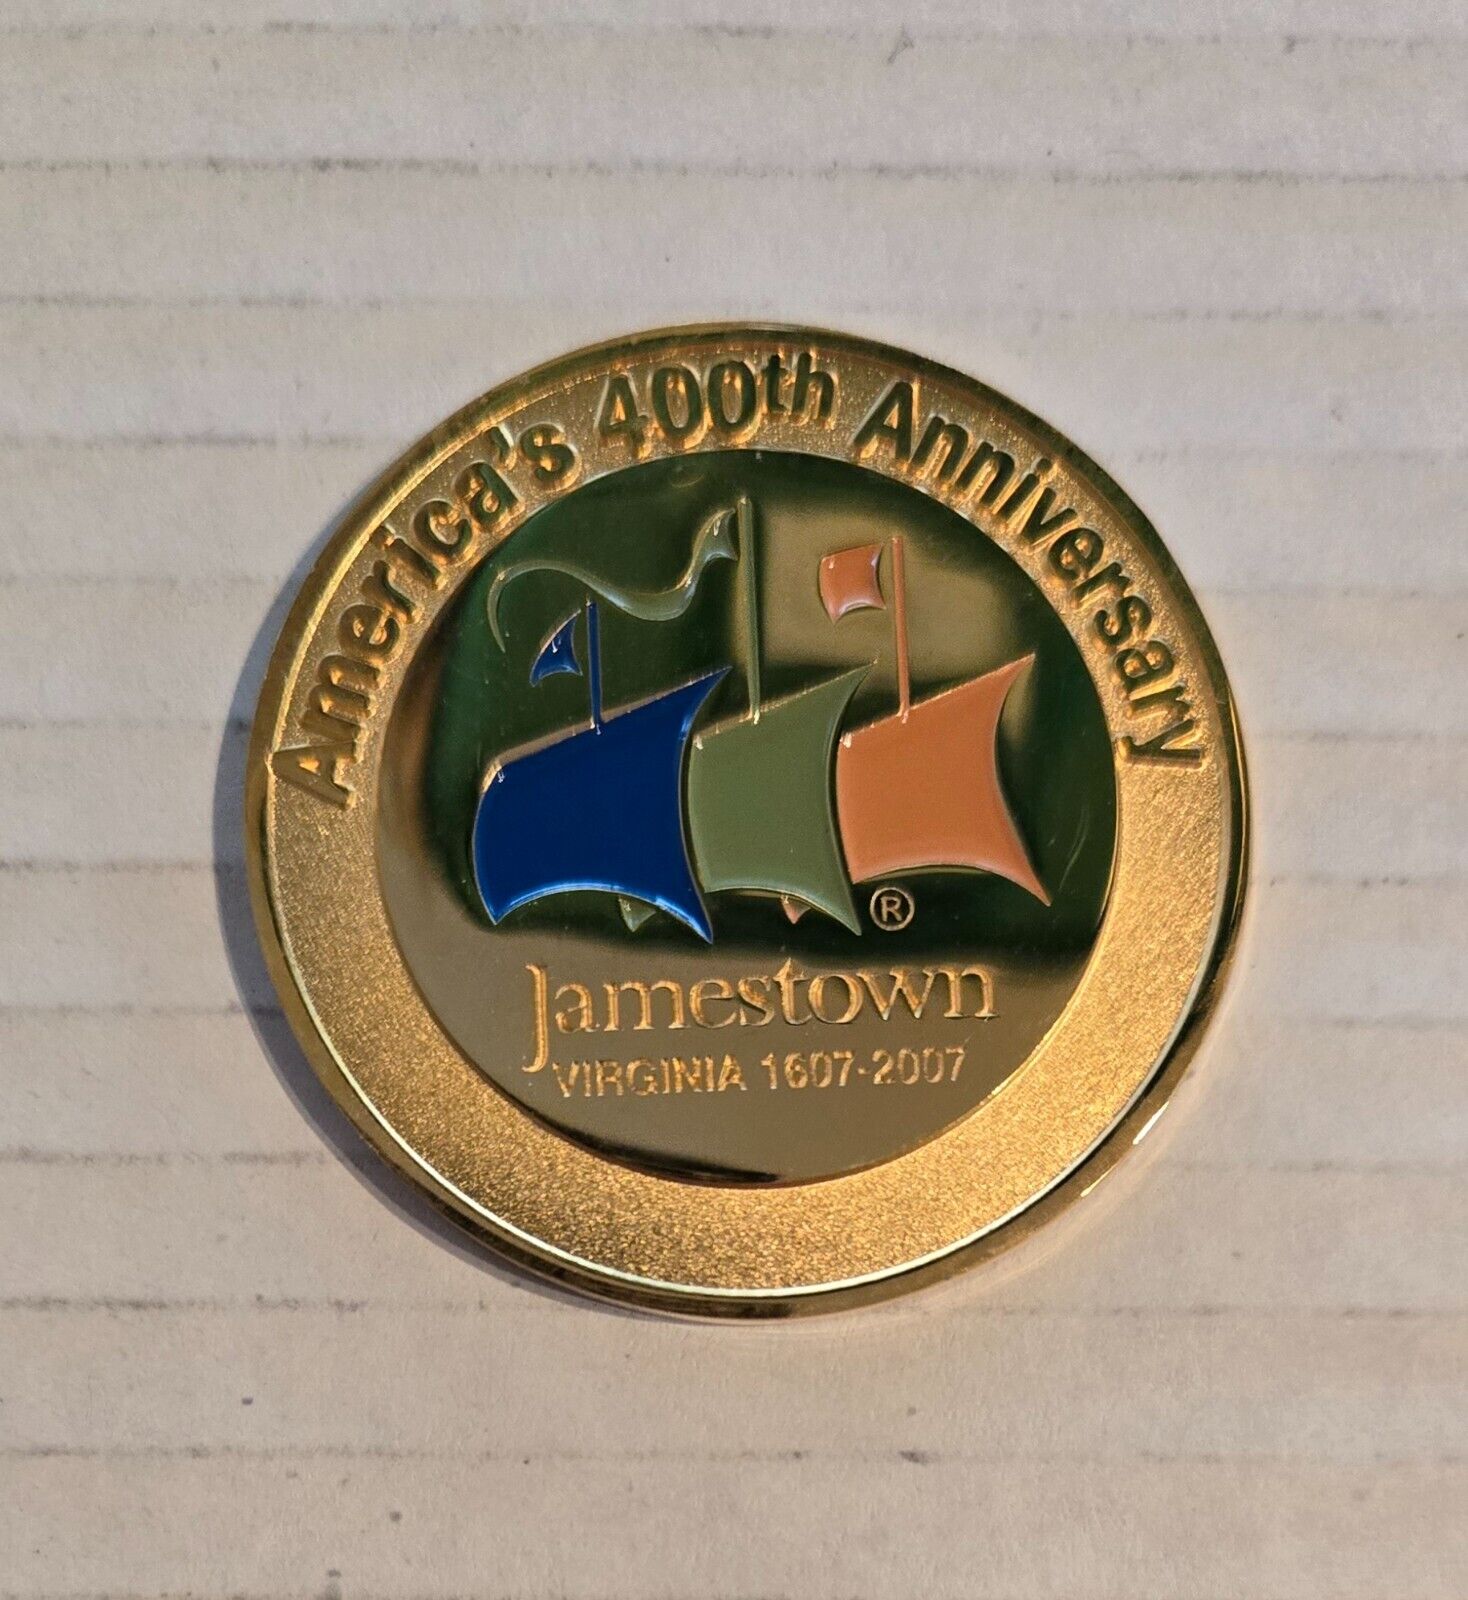 Jamestown Virginia 400th Anniversary 1607-2007 Challenge Coin